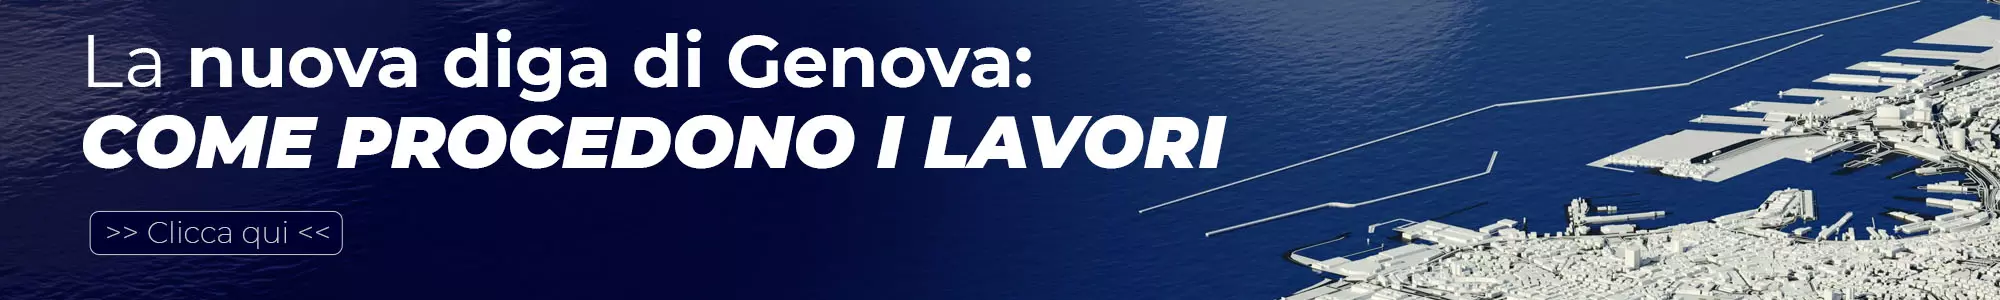 Banner - Nuova Diga Genova